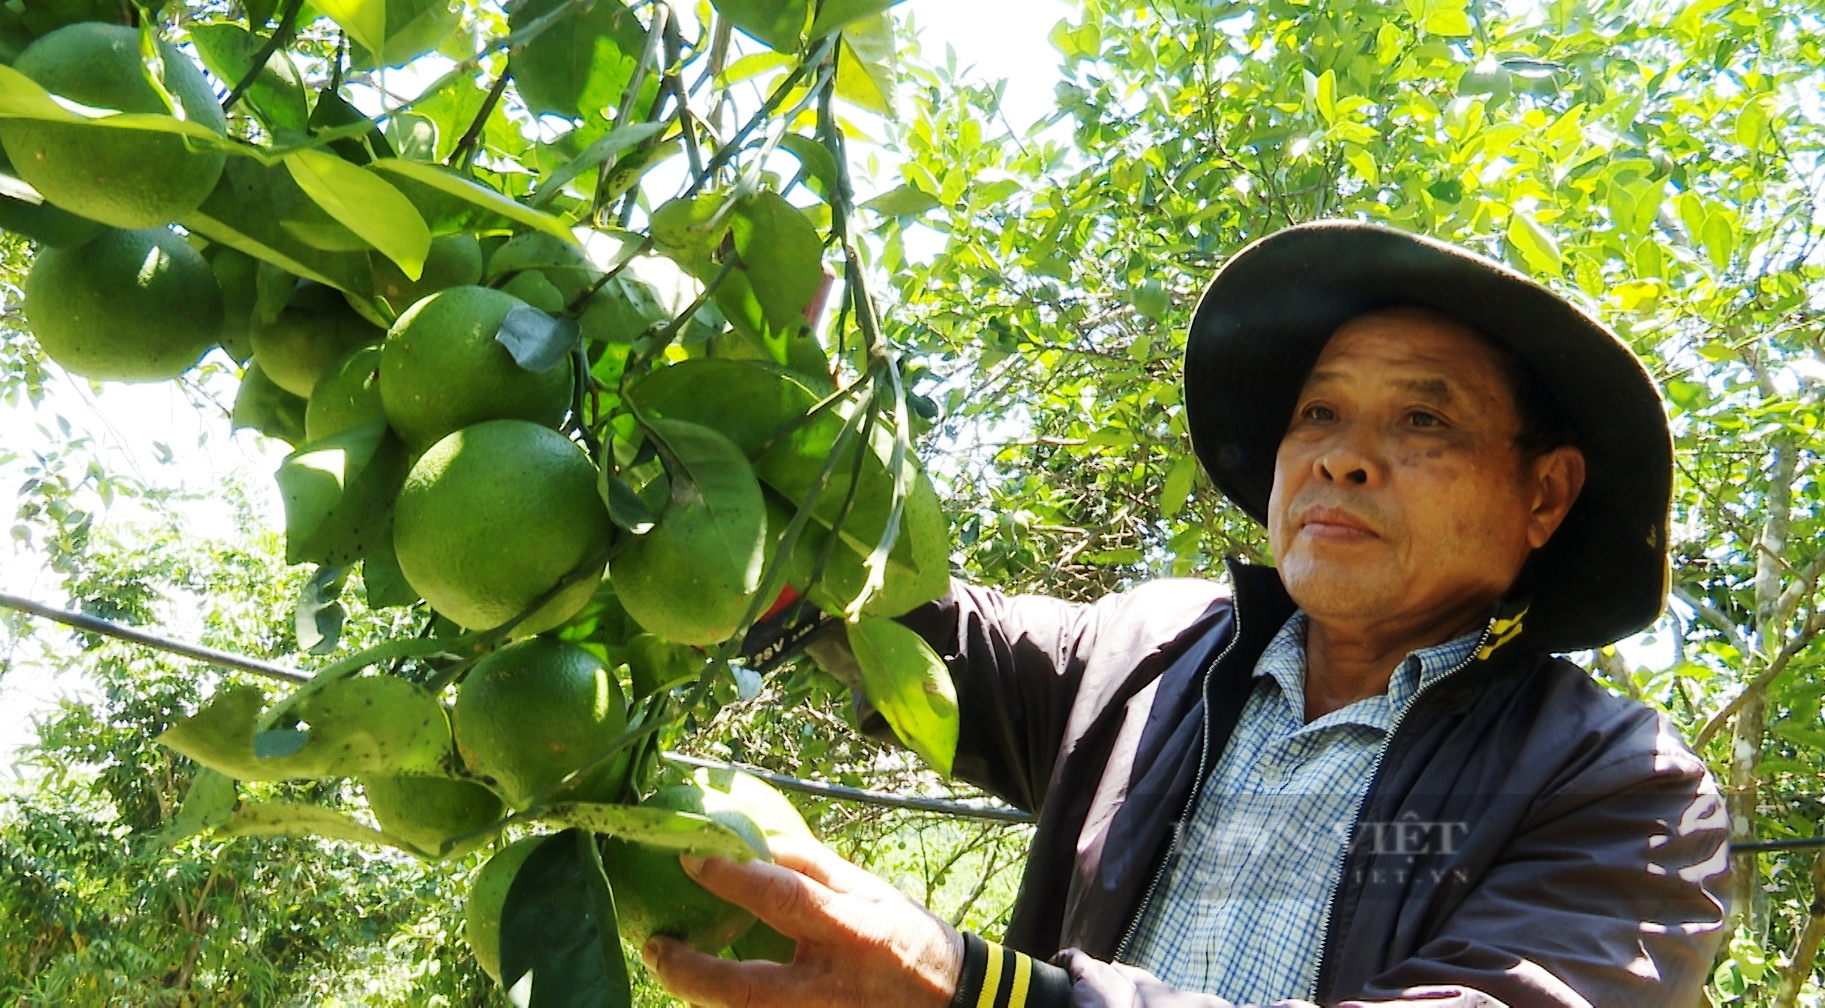  Xây dựng nông thôn mới ở Tiên Phước: Lợi thế từ kinh tế vườn, có nông dân thu cả trăm triệu đồng/năm  - Ảnh 9.